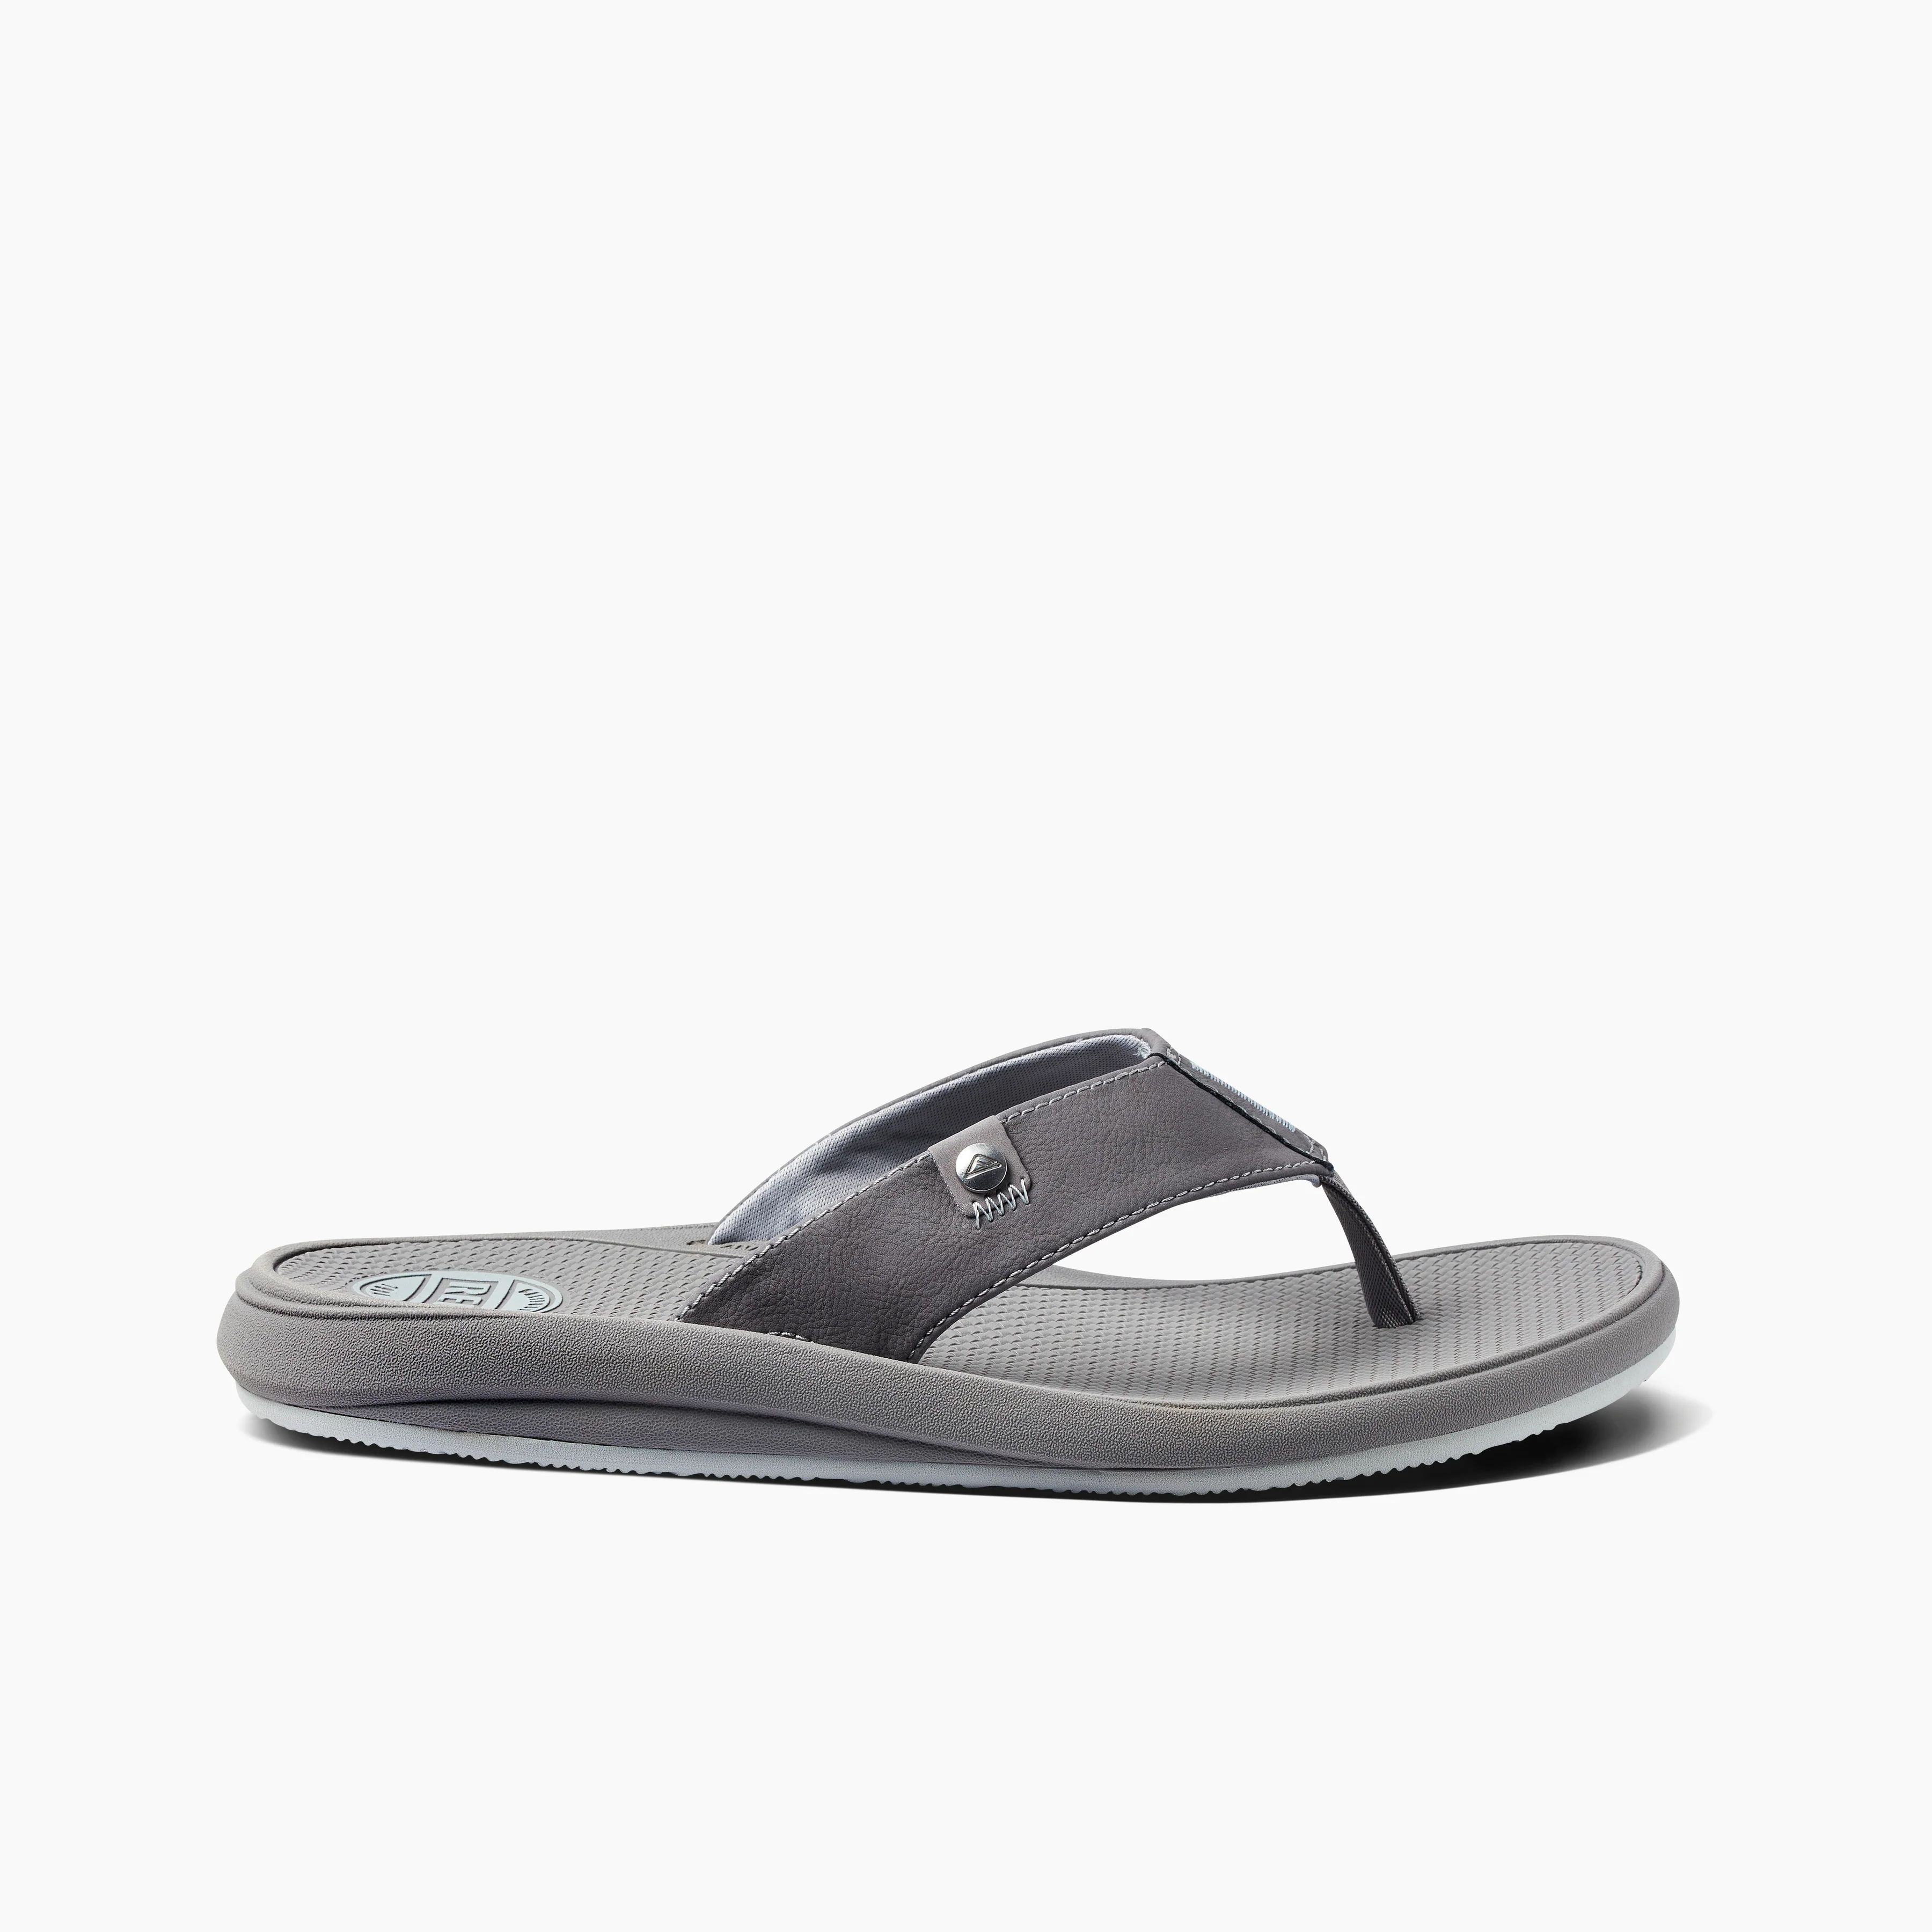 Men's Sandals Phantom Nias In Light Grey | REEF® | Reef